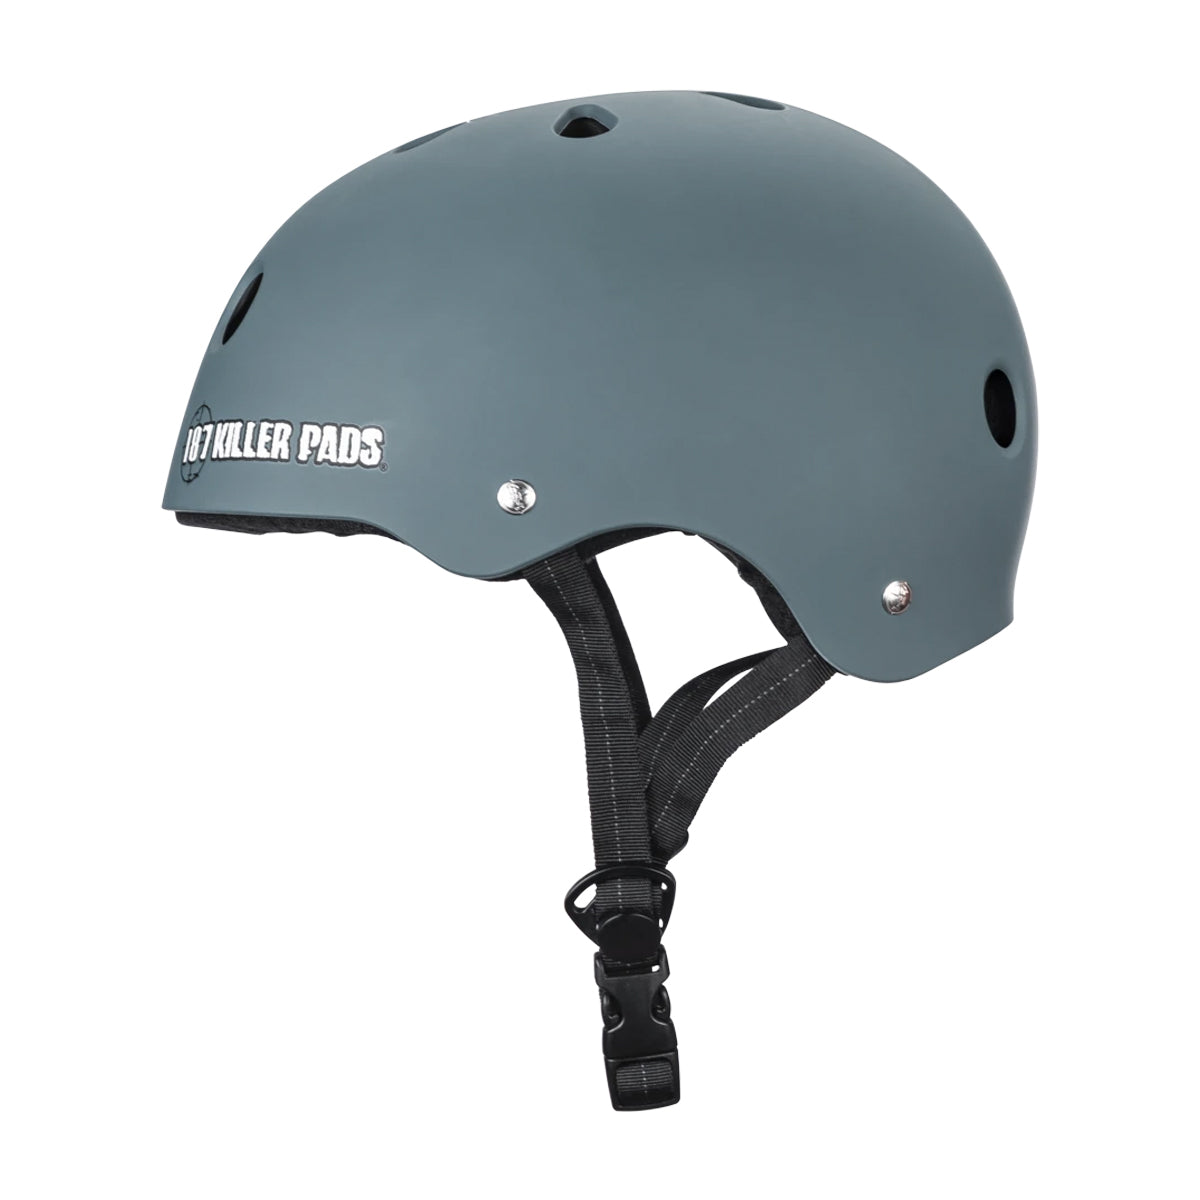 187 Killer Pads Pro Skate Helmet - Stone Blue